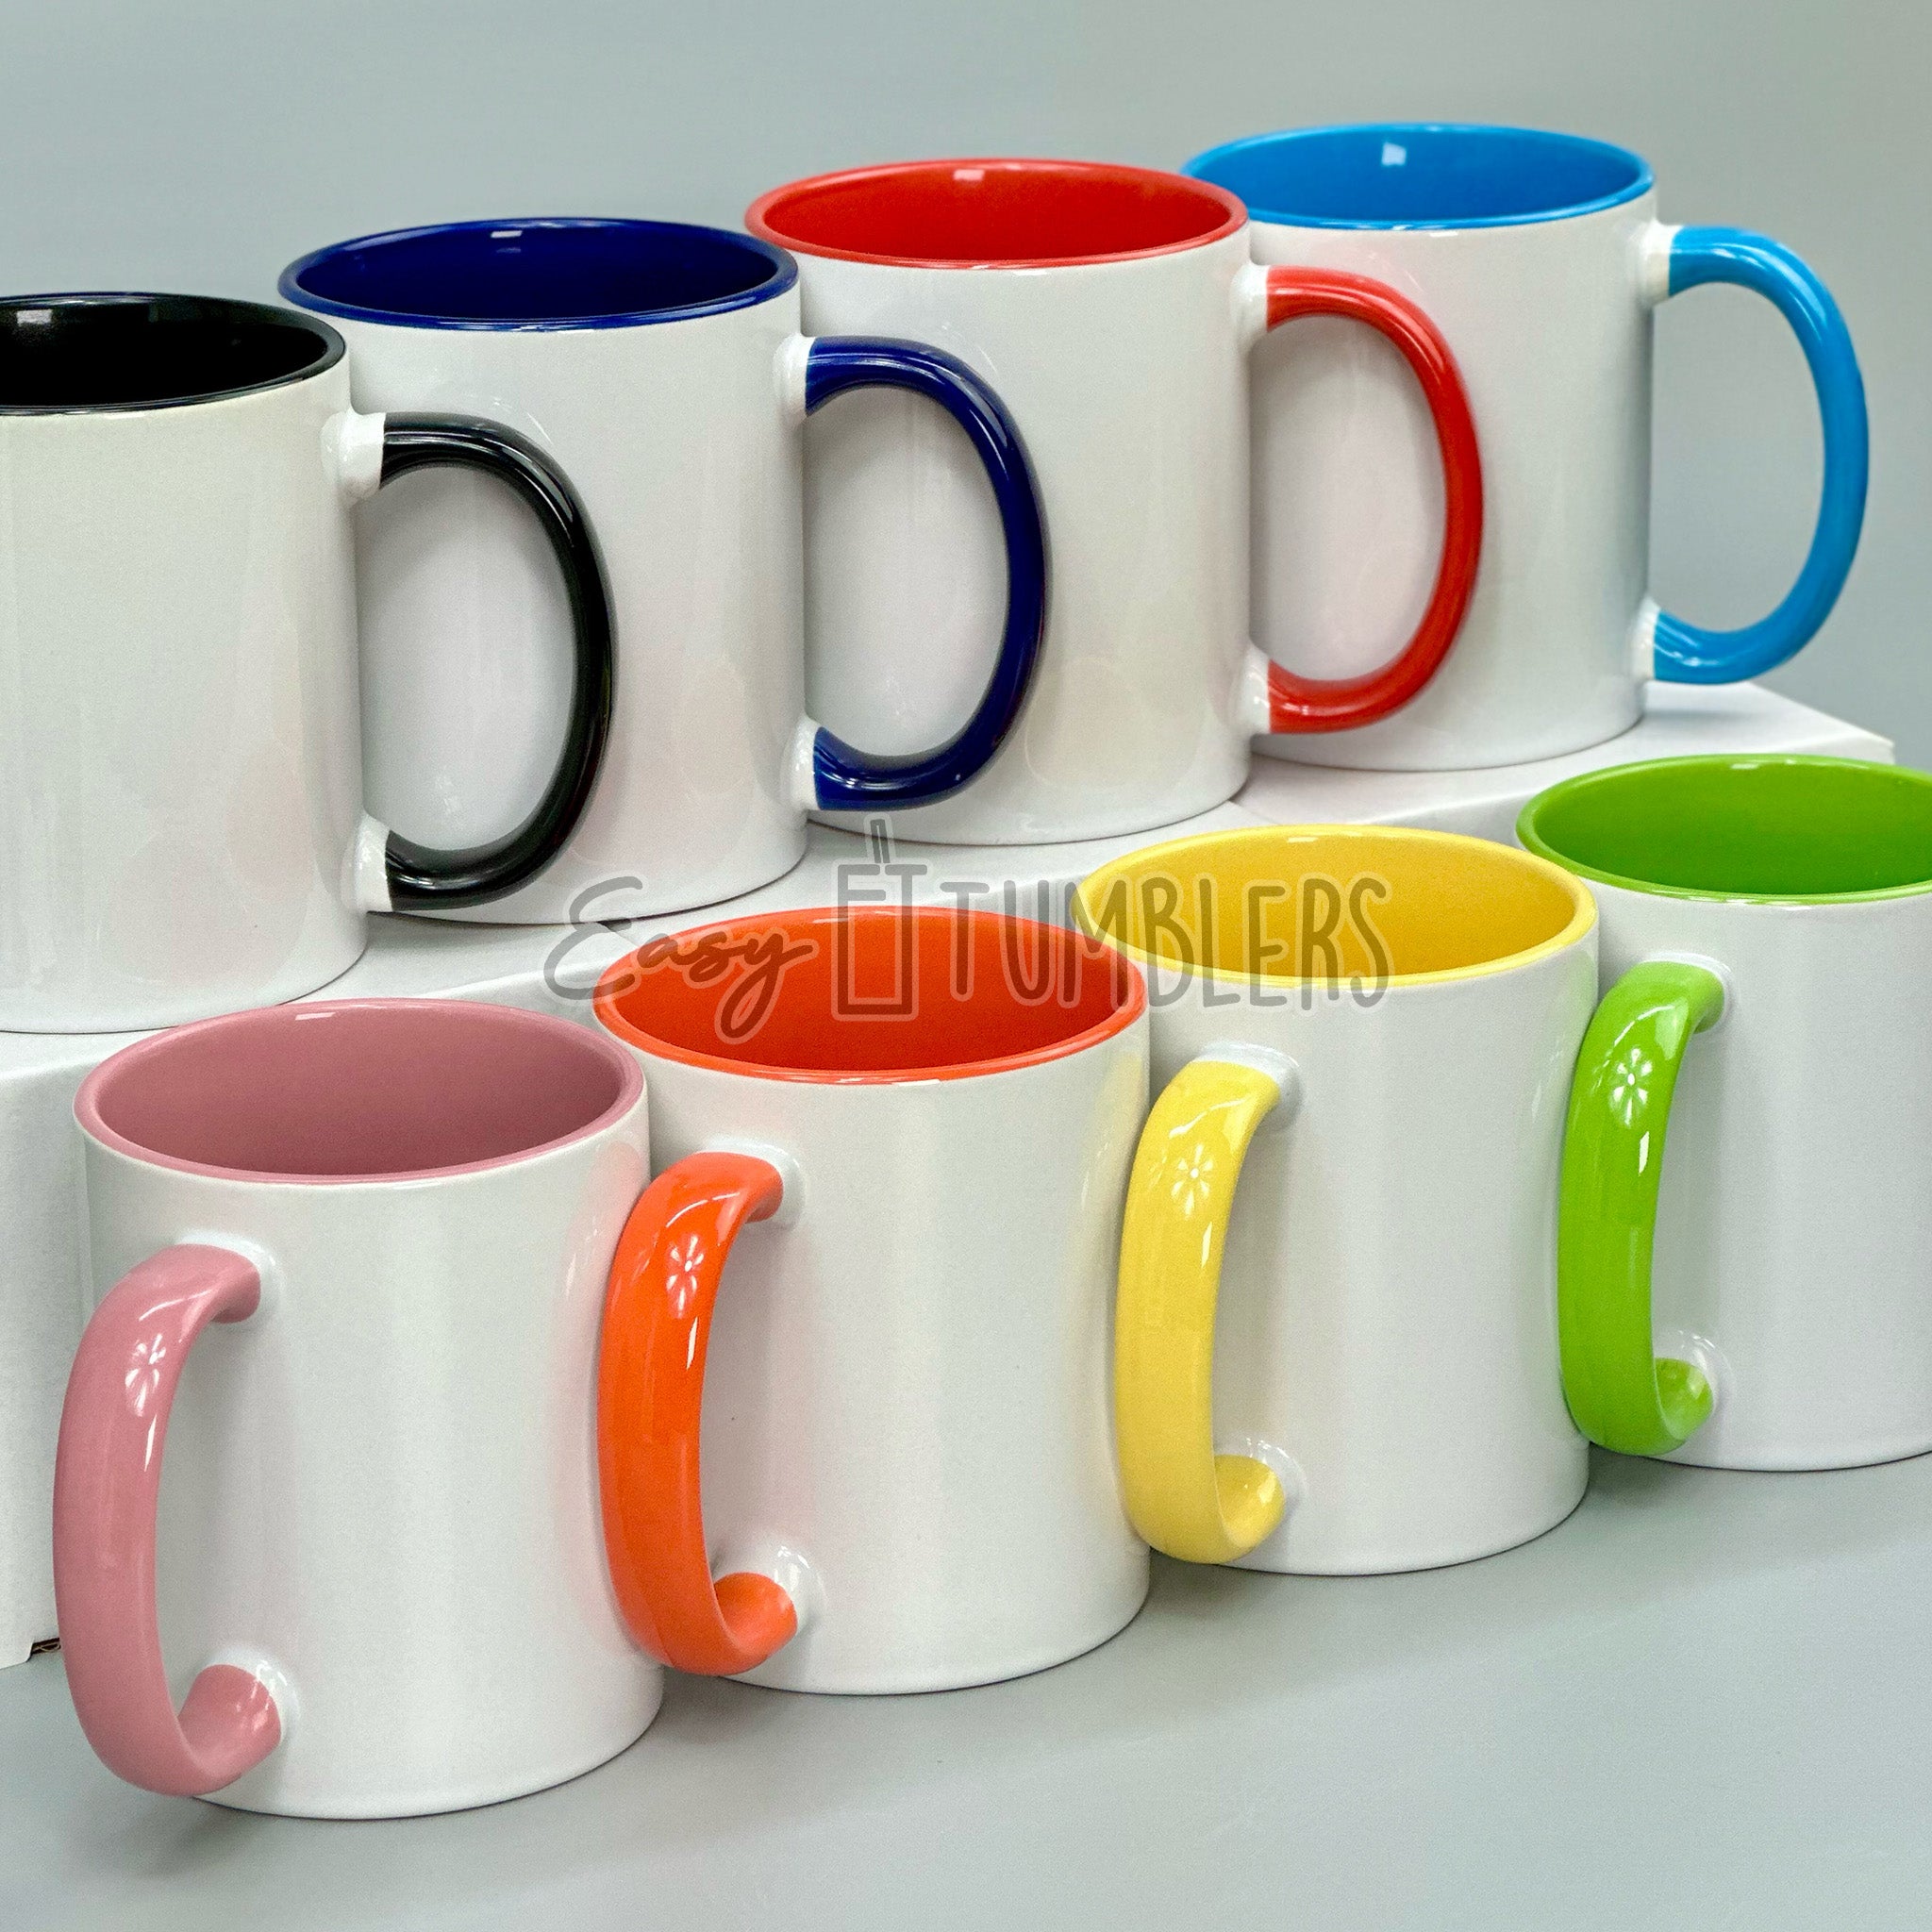 metallic sublimation mug, Pink sublimation mugs, silver